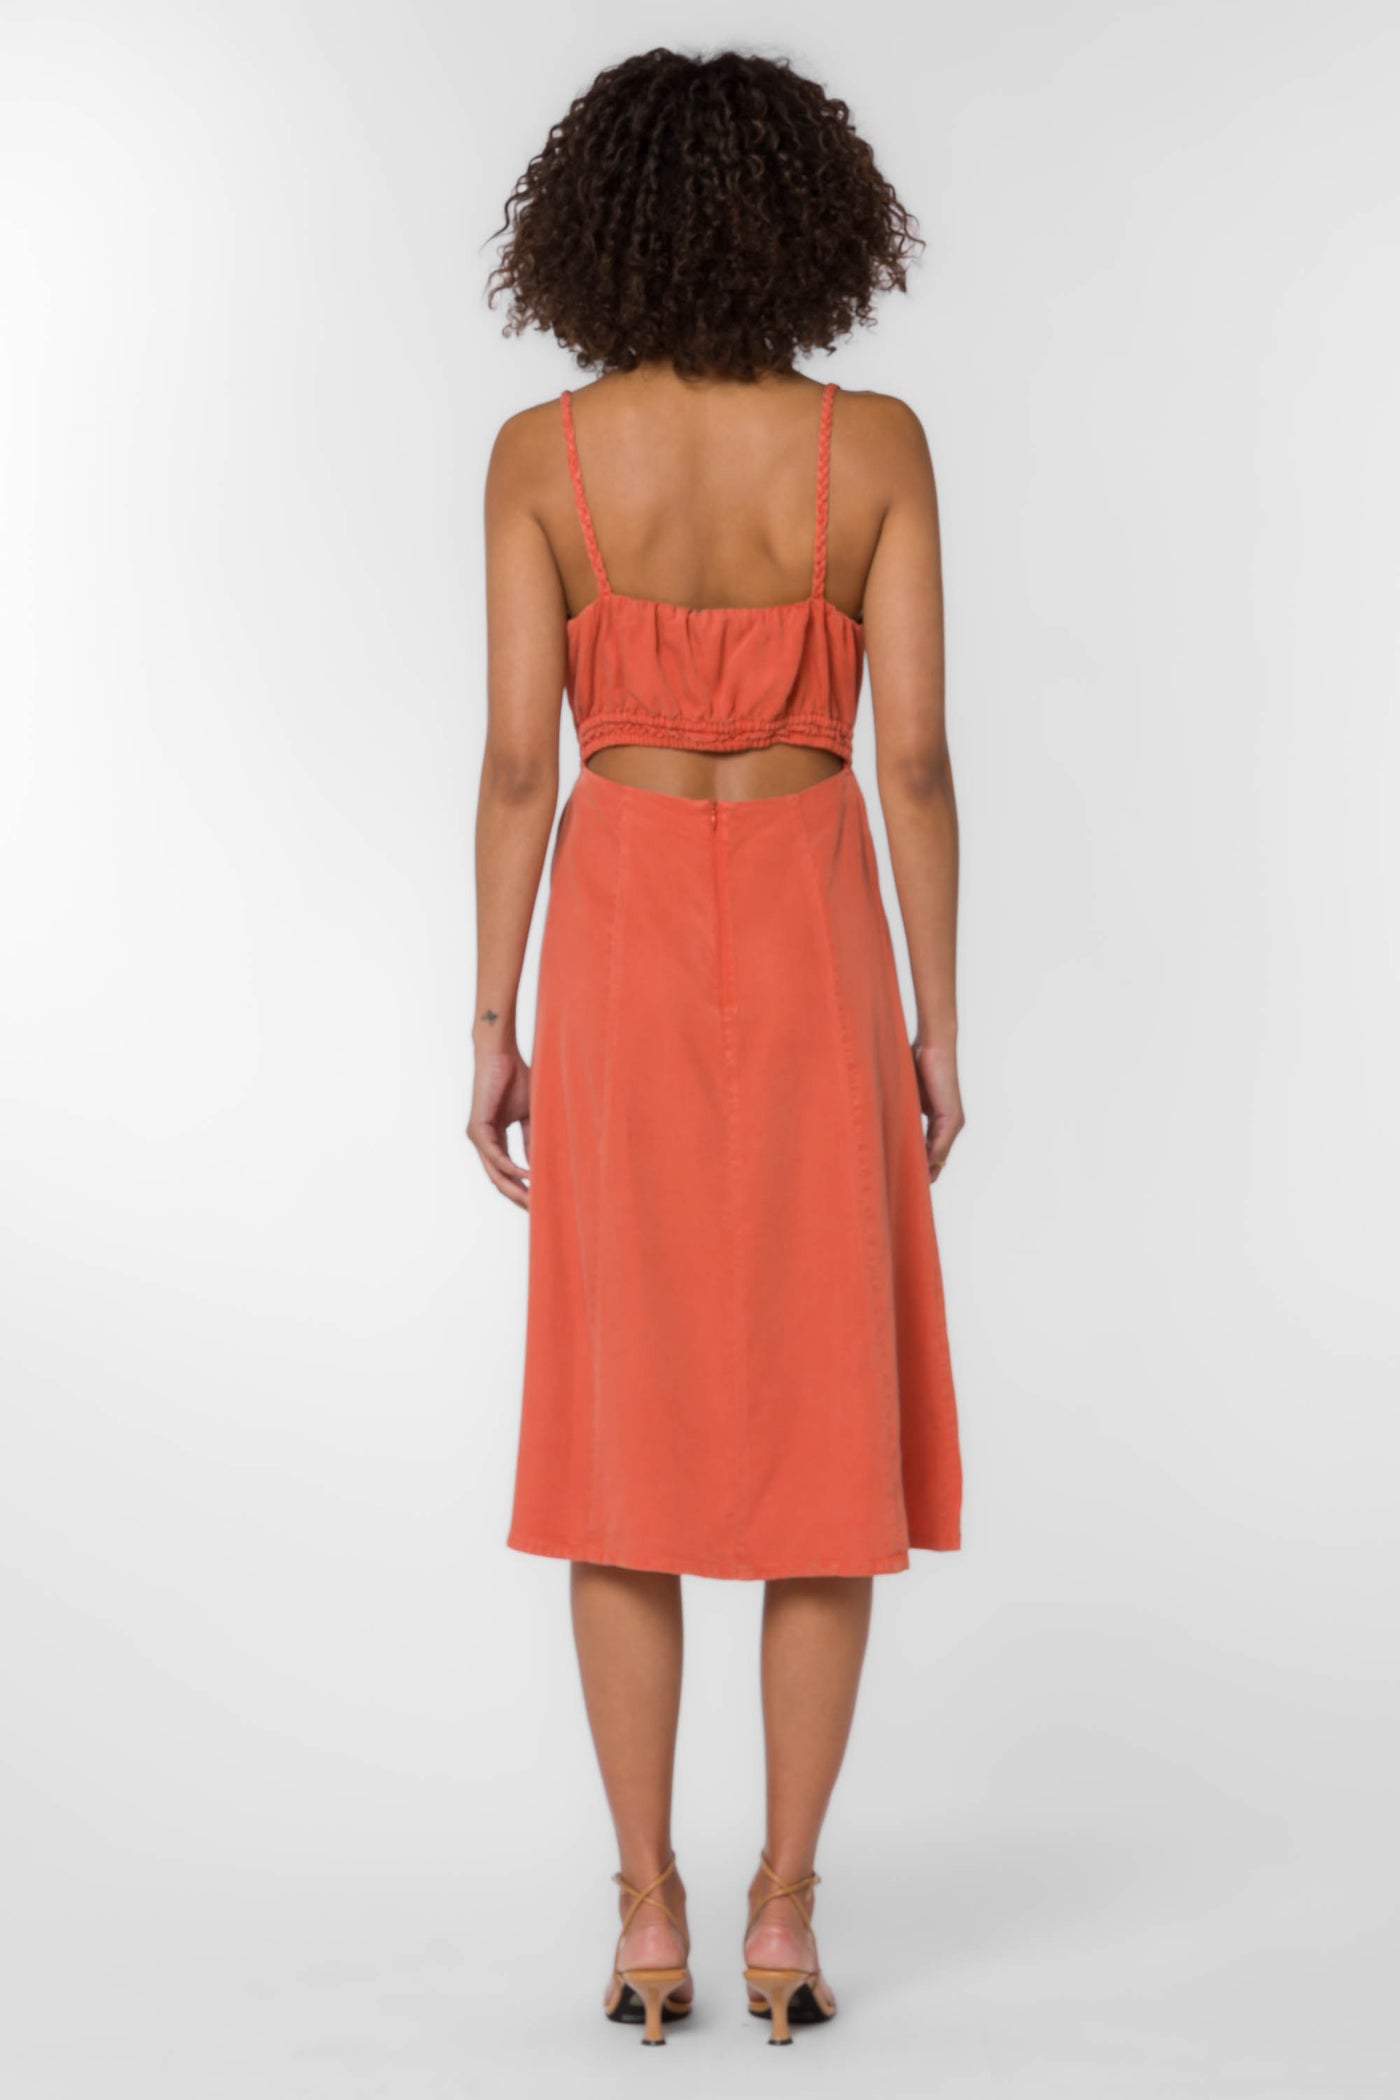 Vestie Orange Dress - Dresses - Velvet Heart Clothing